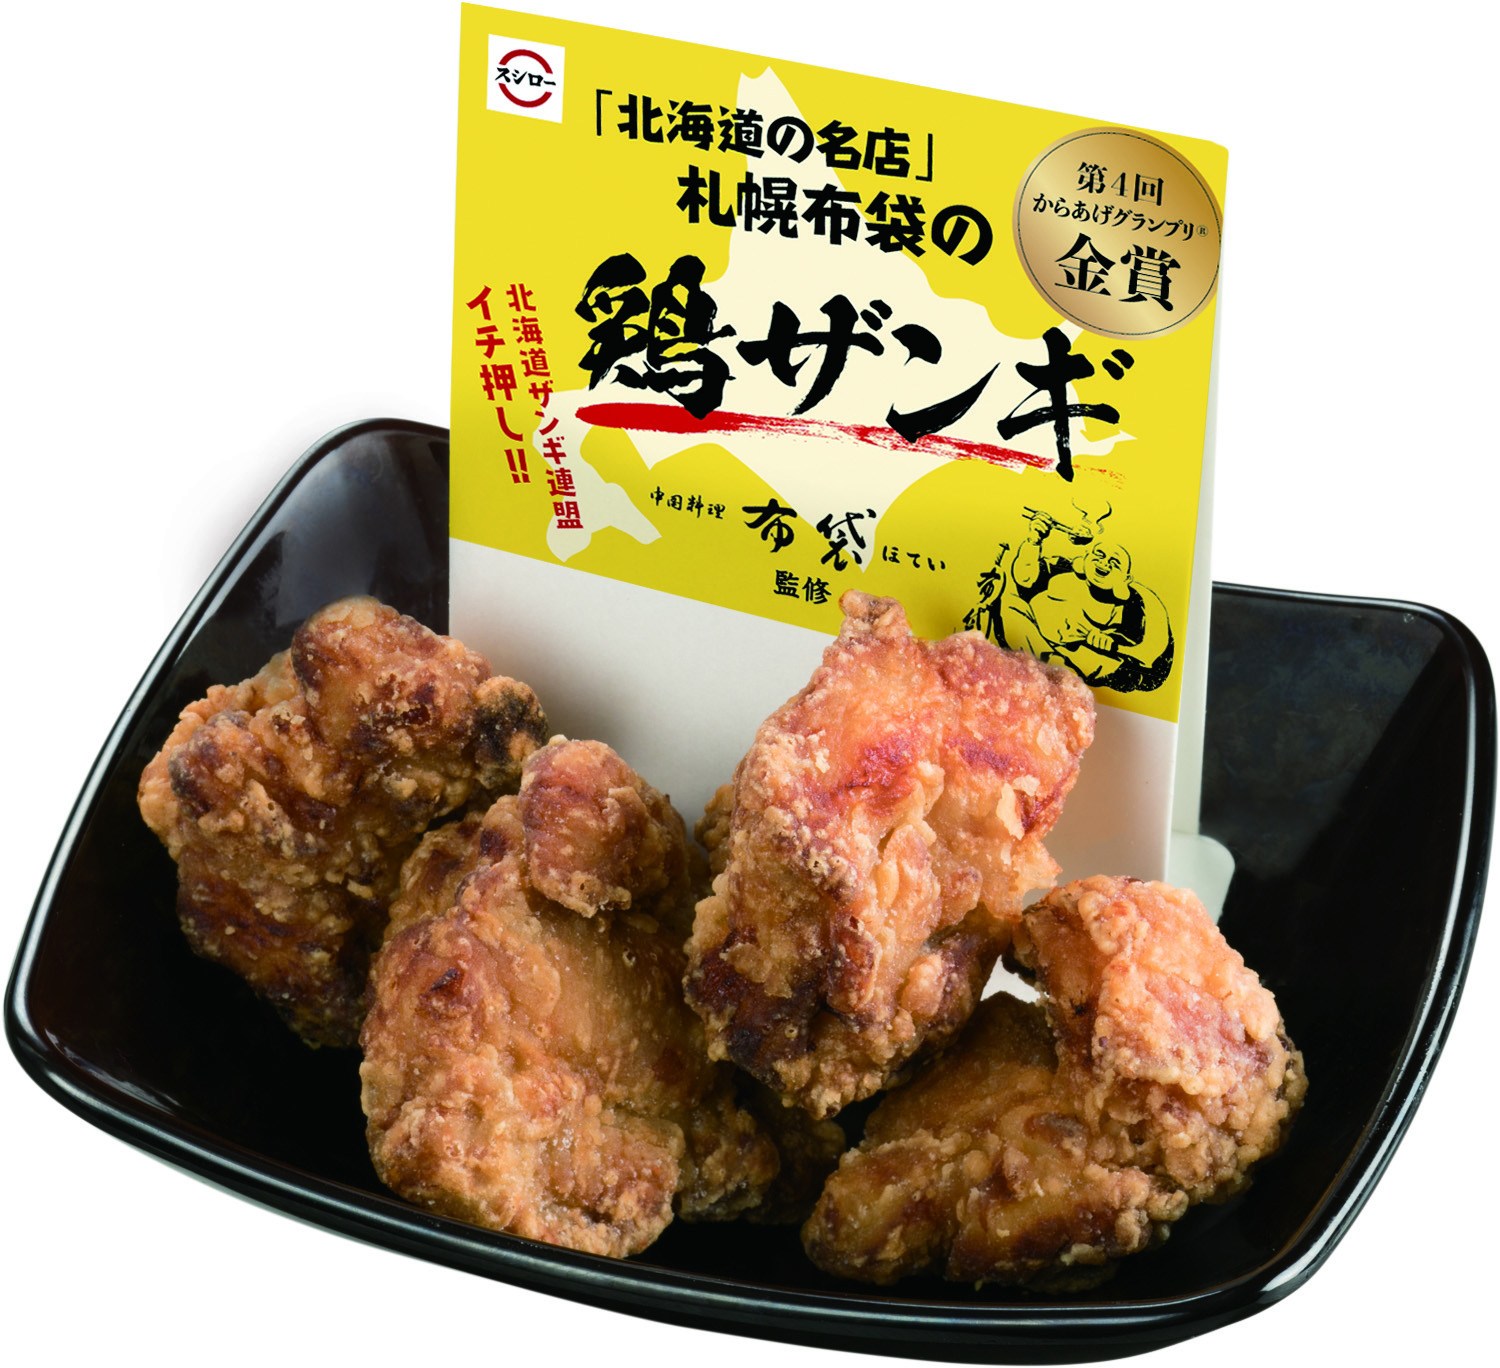 「札幌布袋の鶏ザンギ」280円（税別）